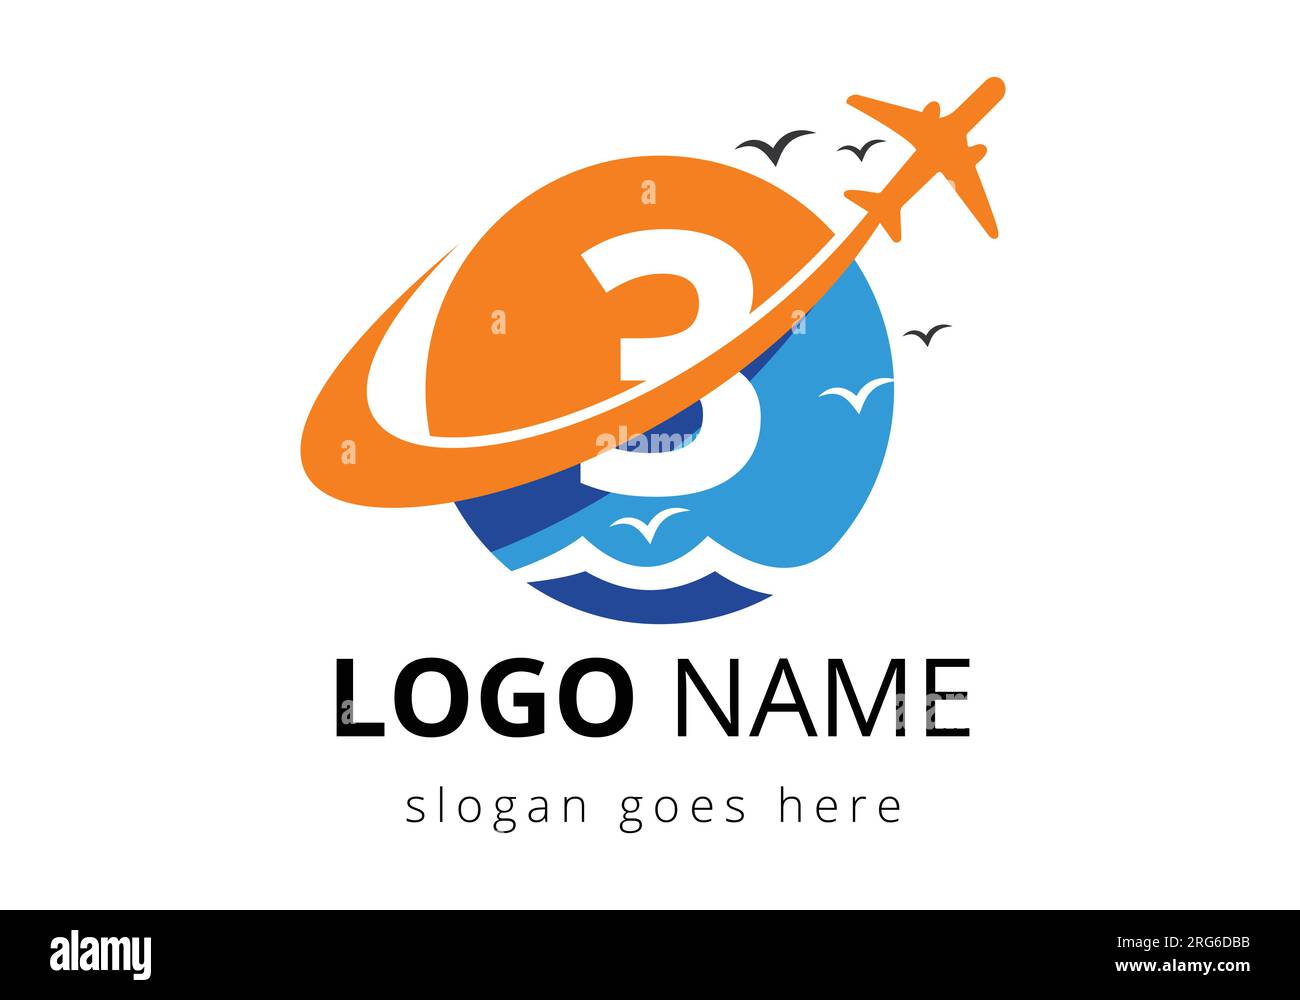 Anfangsbuchstabe 3 mit Reiselogo. Logo-Design-Vorlage für Luft, Fluggesellschaft, Flugzeug und Reise. Stock Vektor